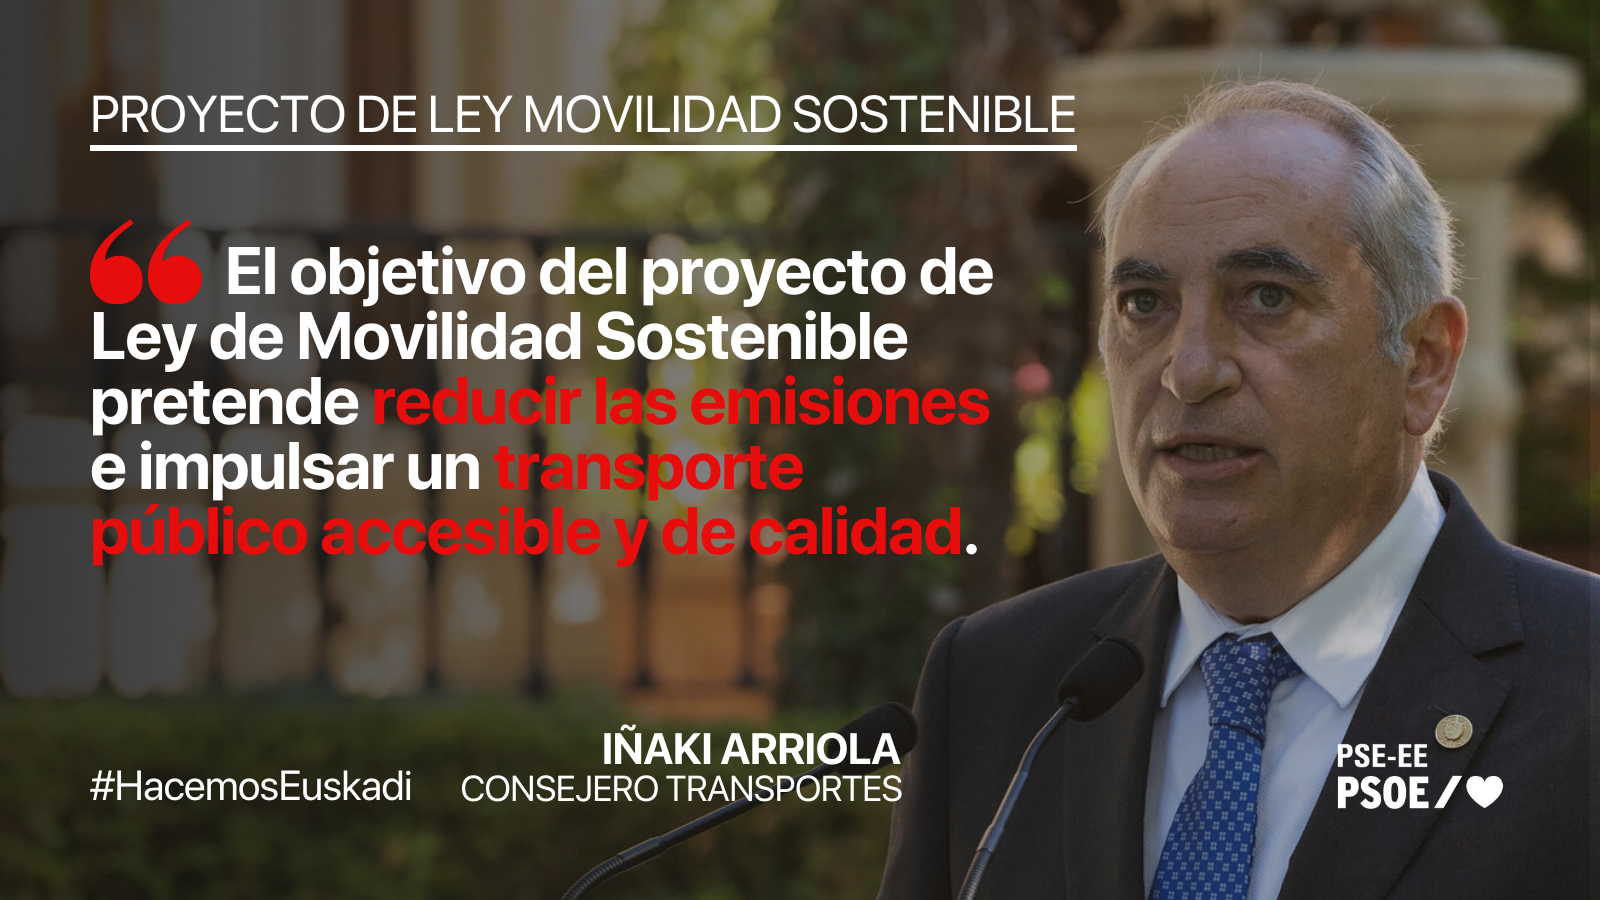 El Gobierno Vasco aprueba el Proyecto de Ley de Movilidad Sostenible impulsada por el consejero, Iñaki Arriola